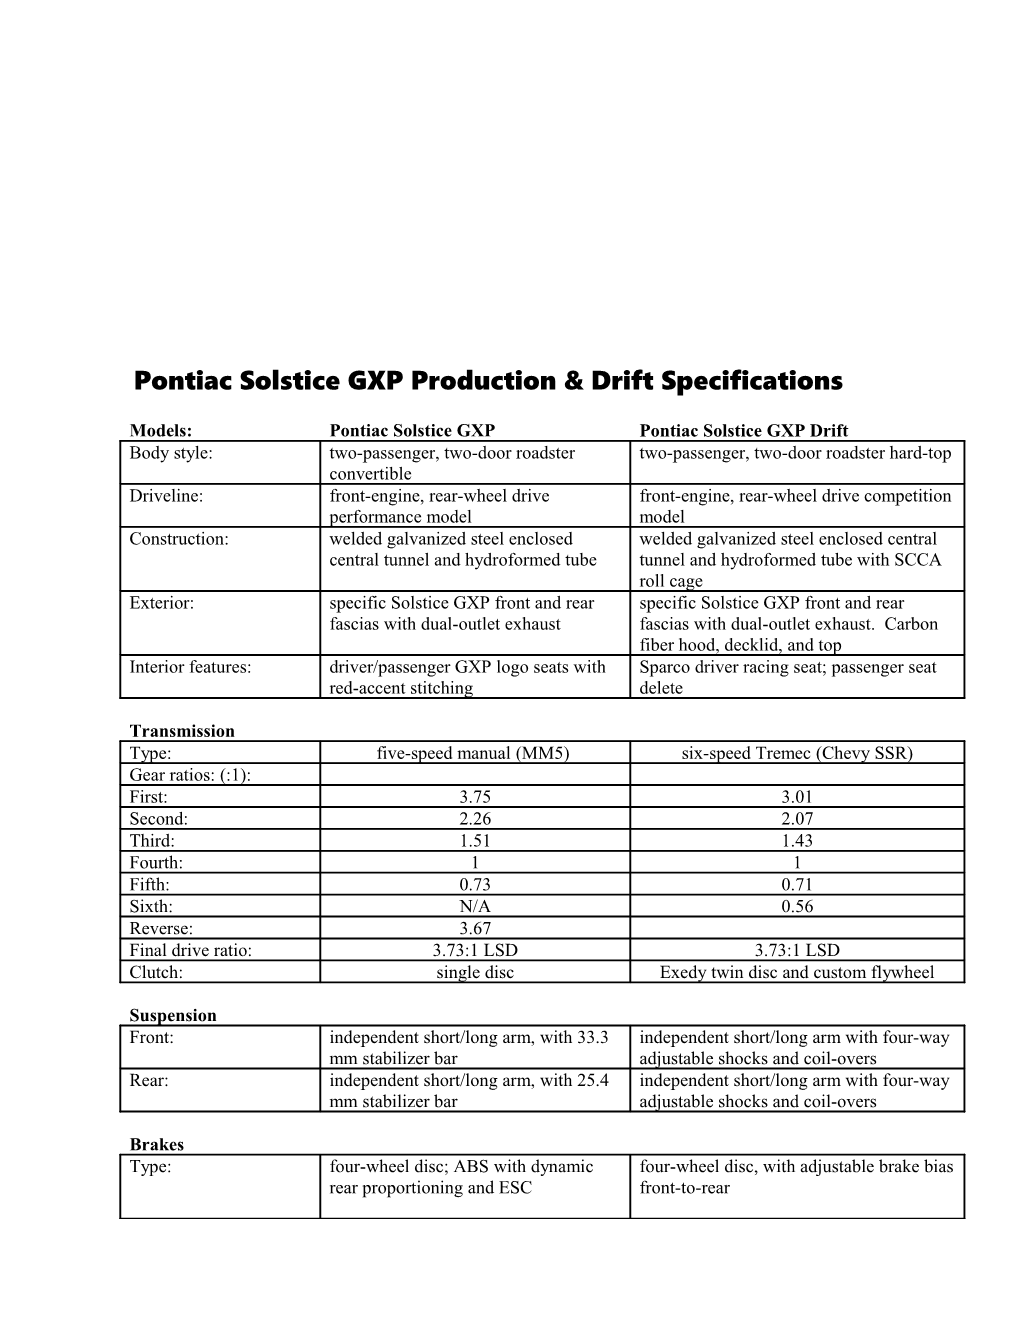 PONTIAC SOLSTICE GXP Production Vs